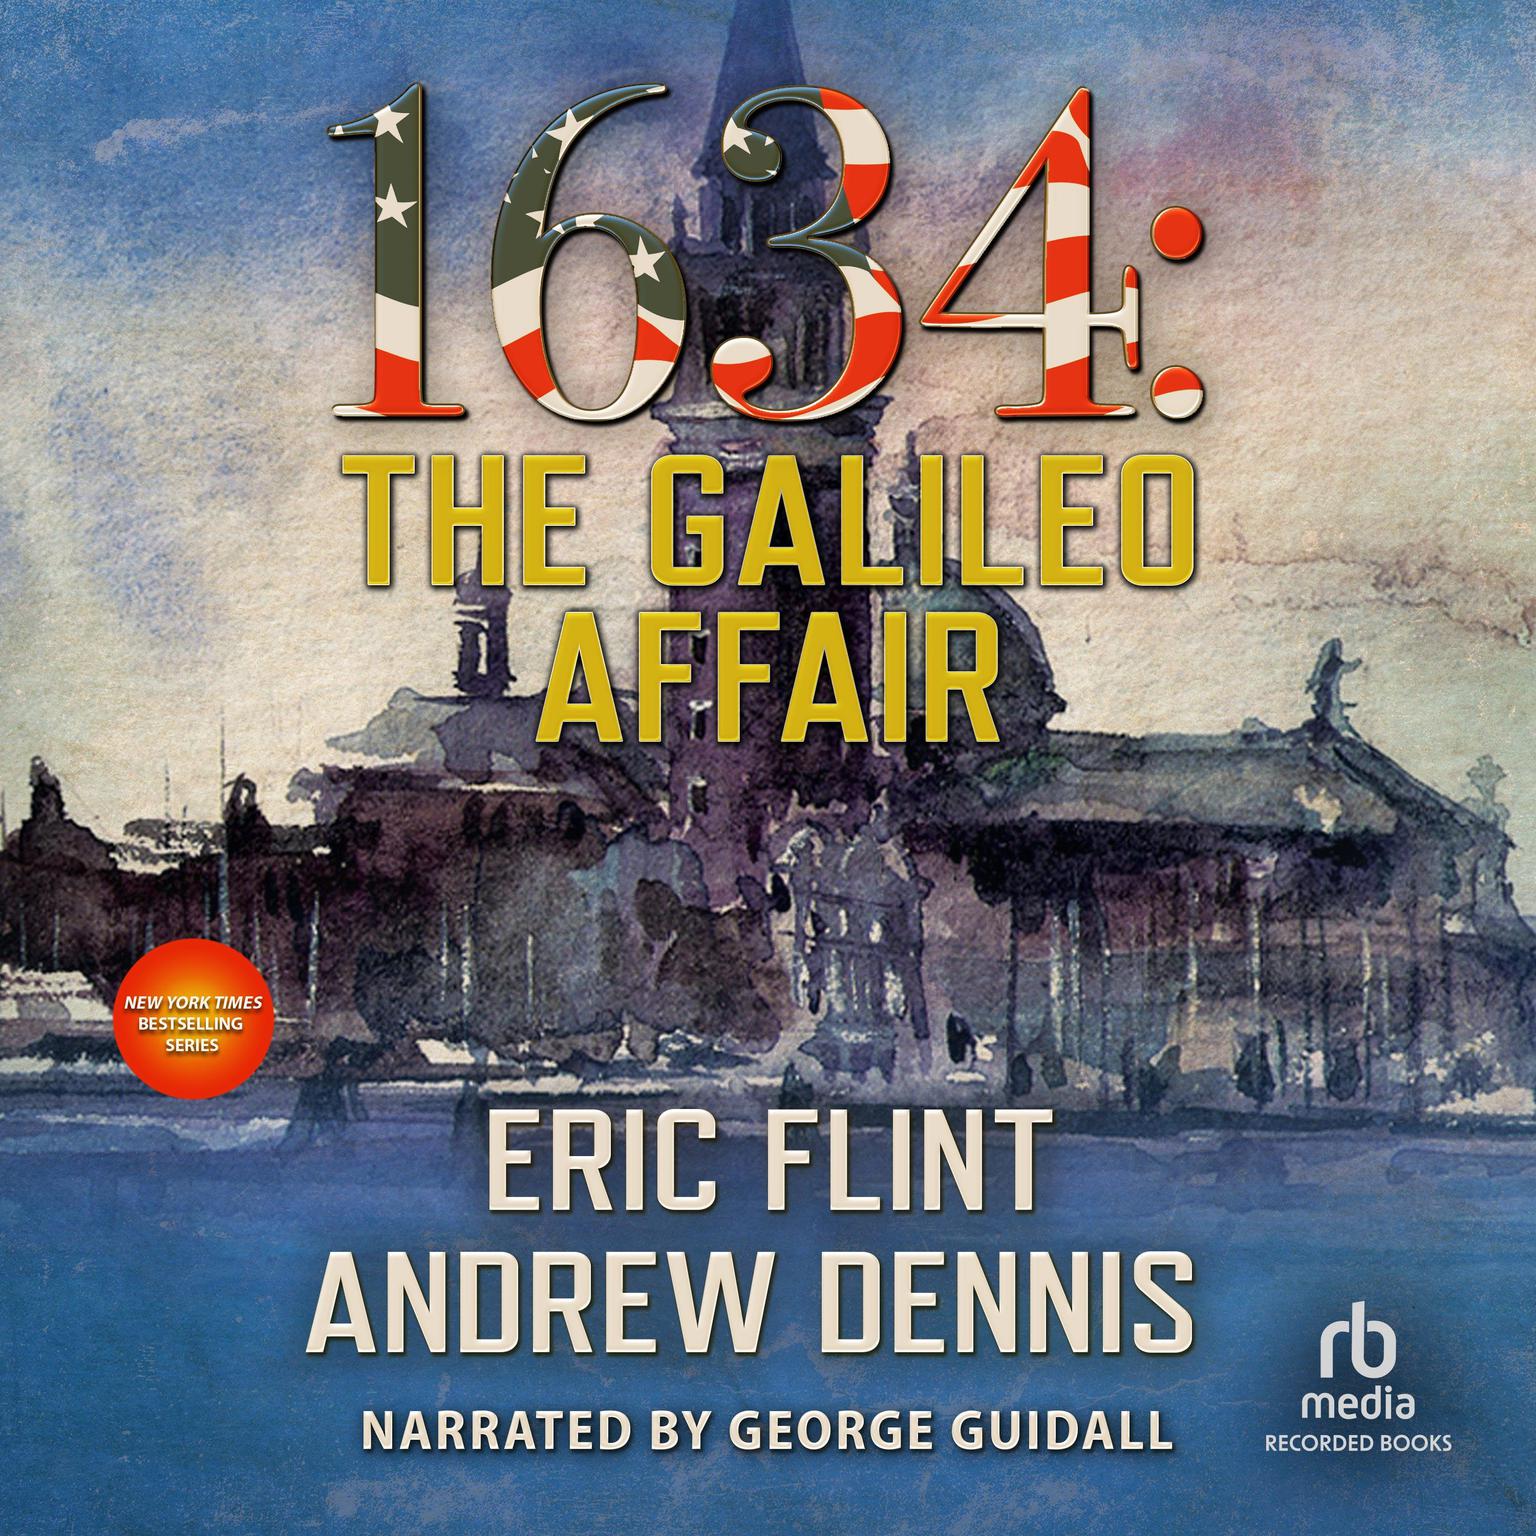 1634: The Galileo Affair Audiobook, by Eric Flint